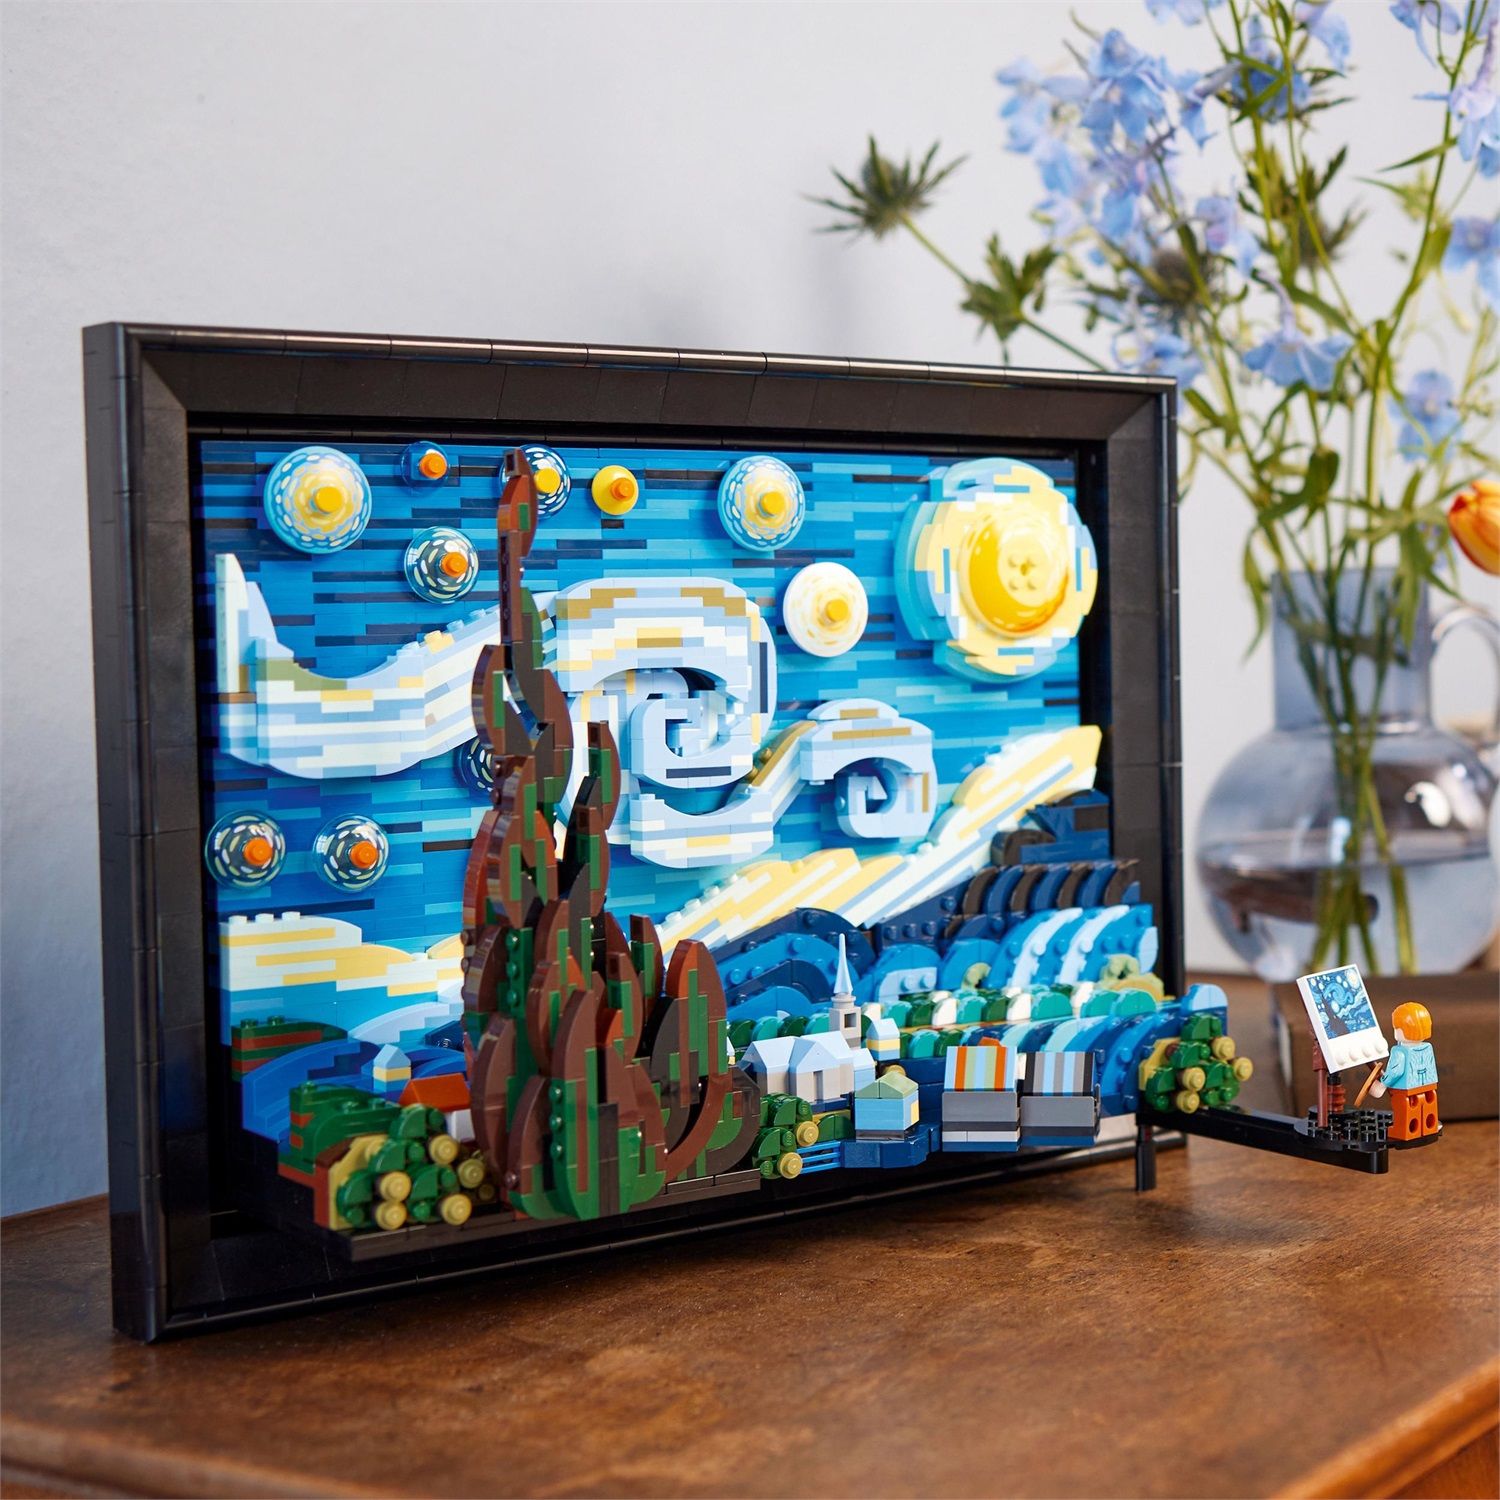 Lego Ideas 21333 Vincent van Gogh - Notte stellata